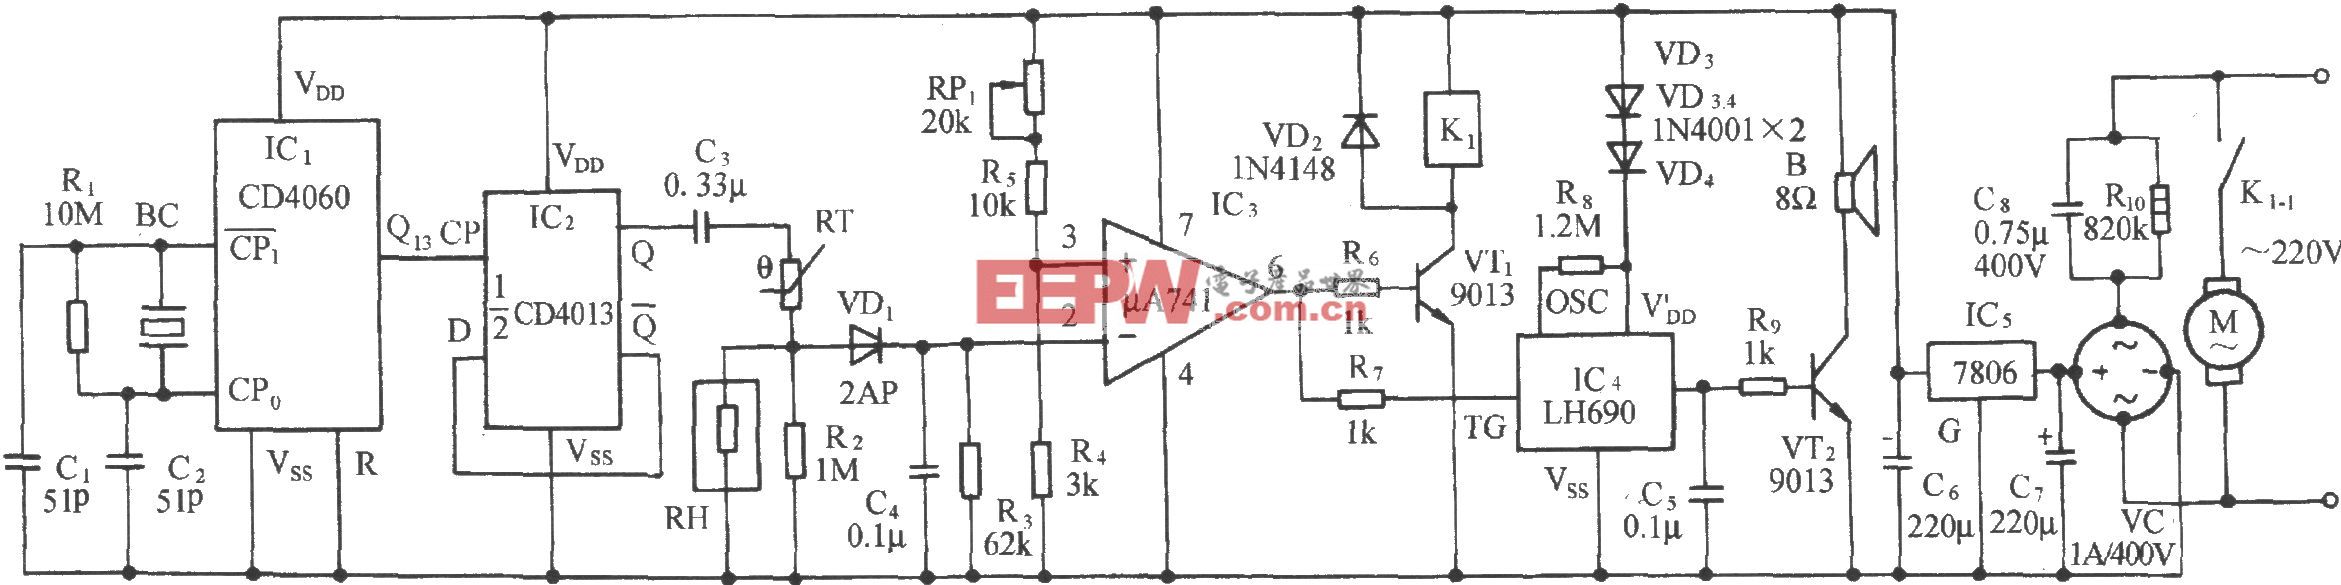 库房湿度检测及自动通风排气装置电路(MS01-A)